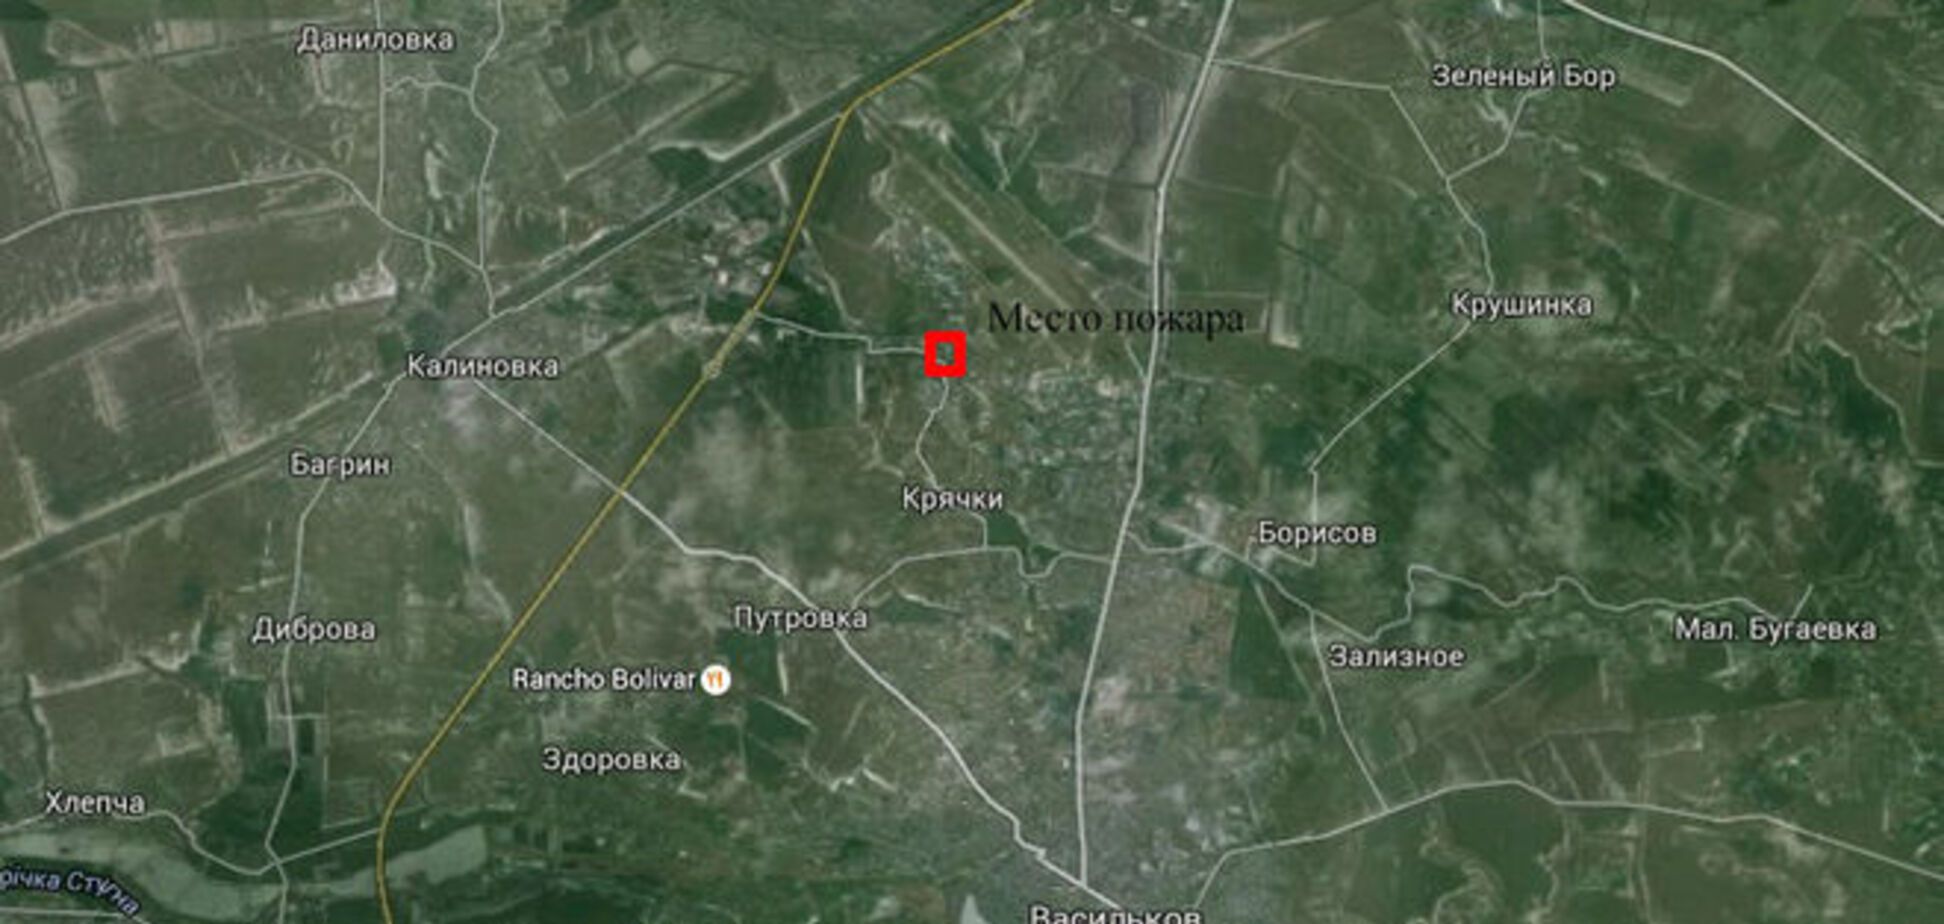 Карта пожара на нефтебазе в Василькове: до Глевахи 4 км, до Василькова - 5 км